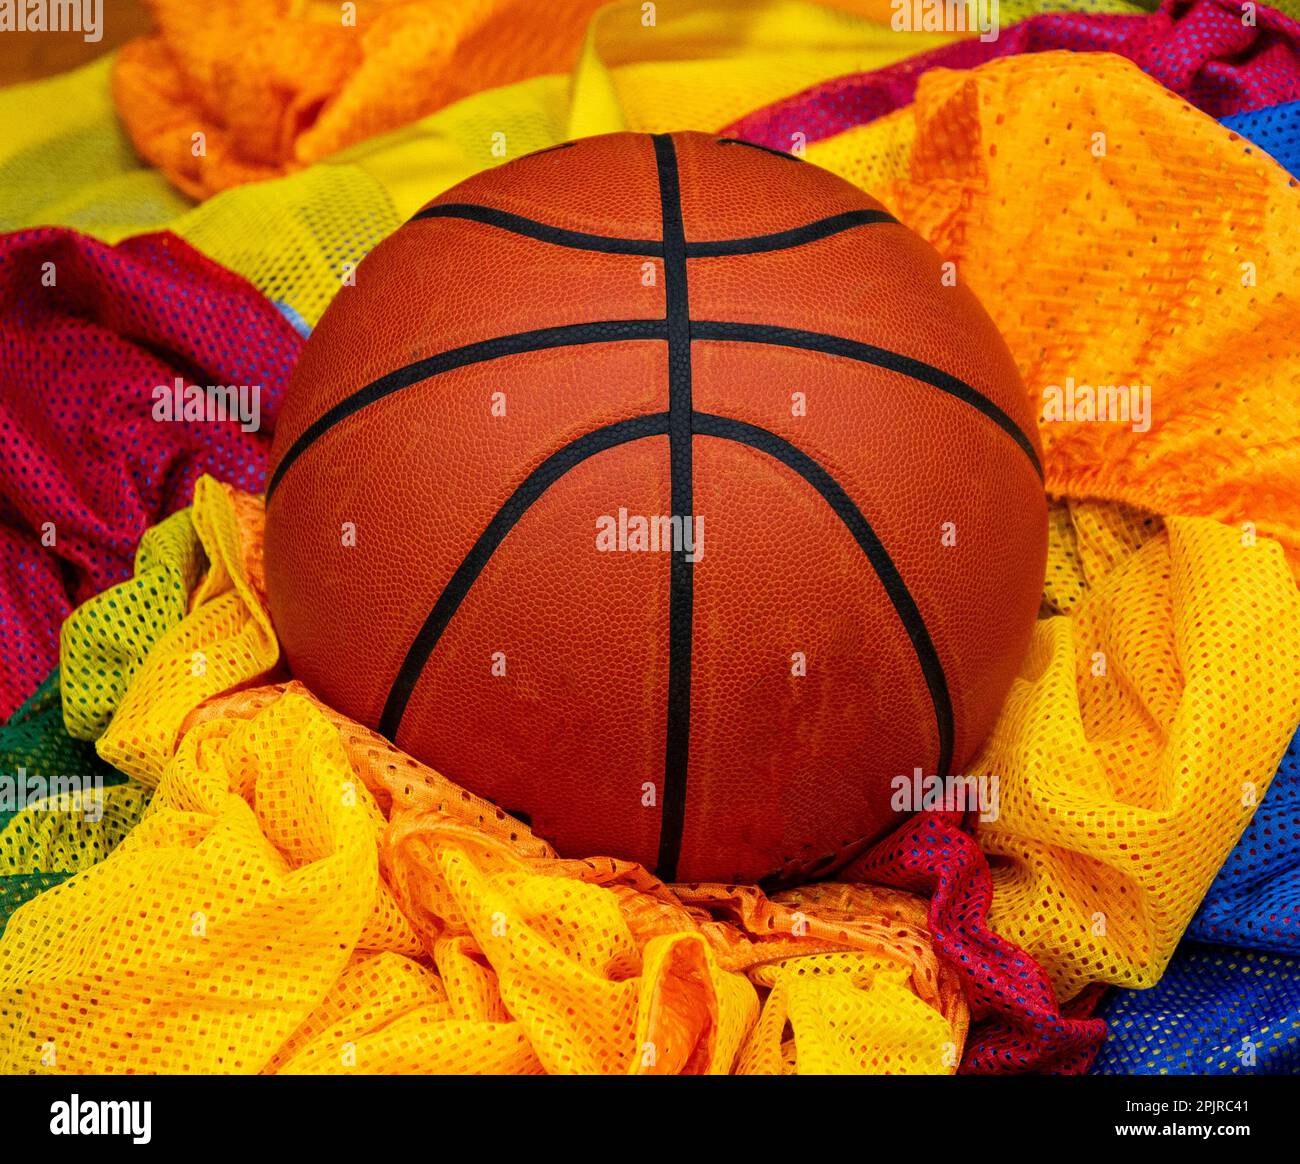 Ein Basketball auf vielen bunten Pinnies während eines Gymnastikkurses. Stockfoto